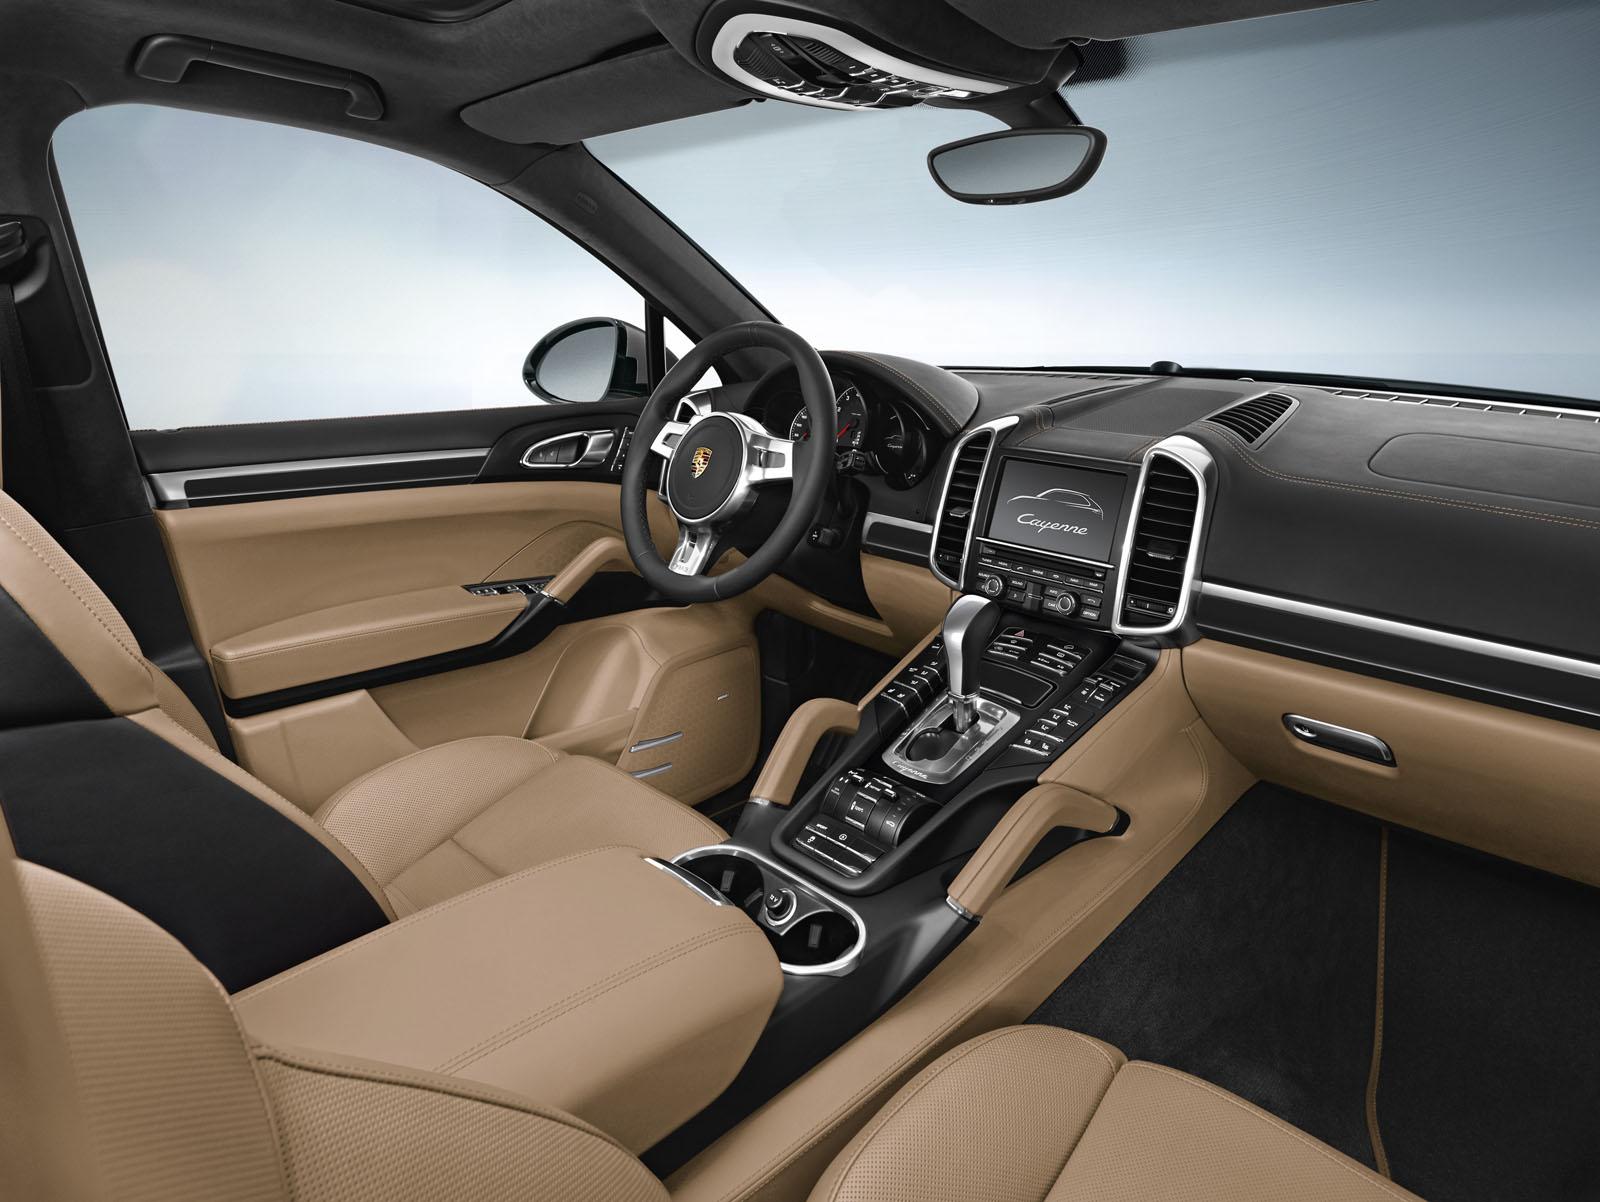 Porsche Cayenne Platinum Edition interiors